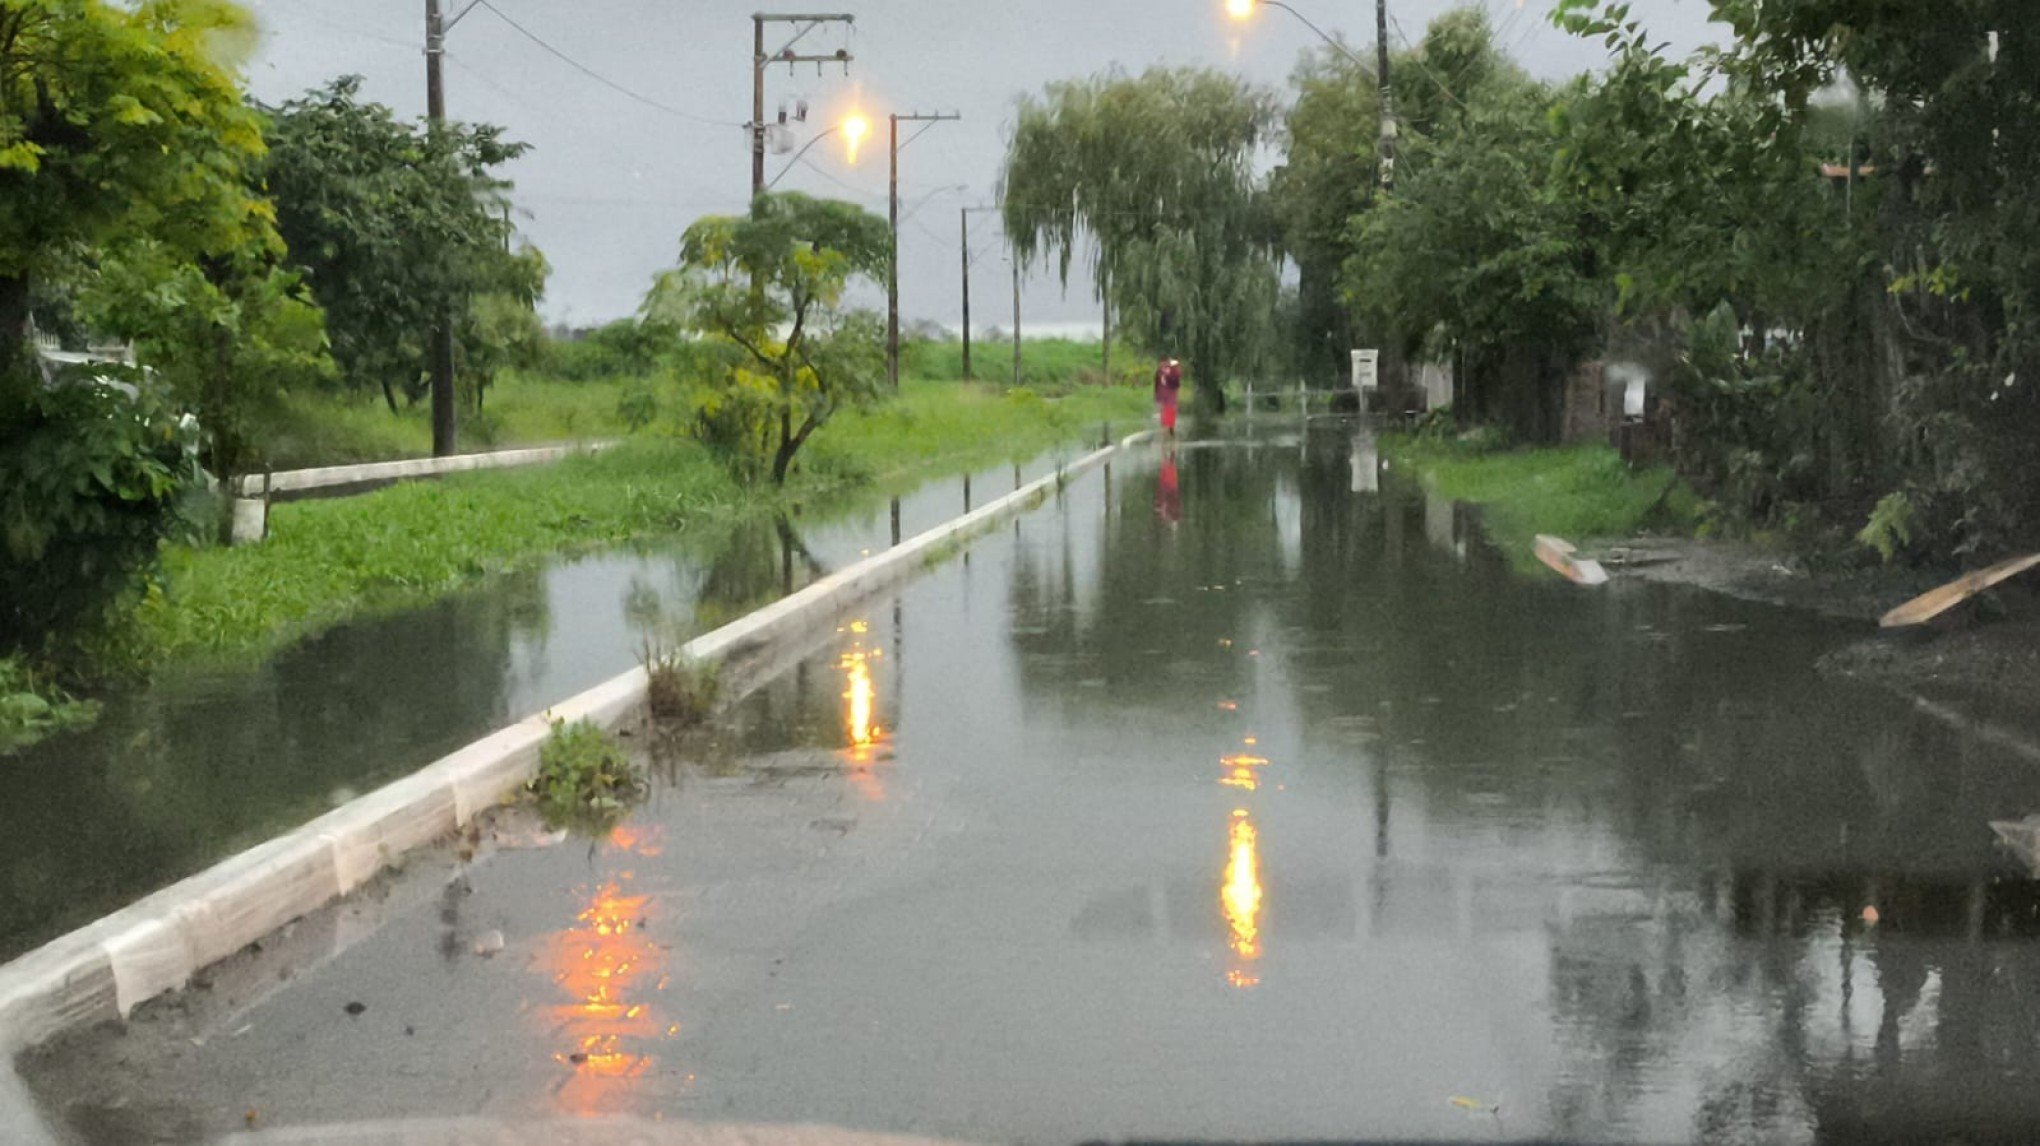 TEMPESTADE: "Esse problema se repete toda vez que chove", lamenta morador que vê rua alagar com chuva intensa